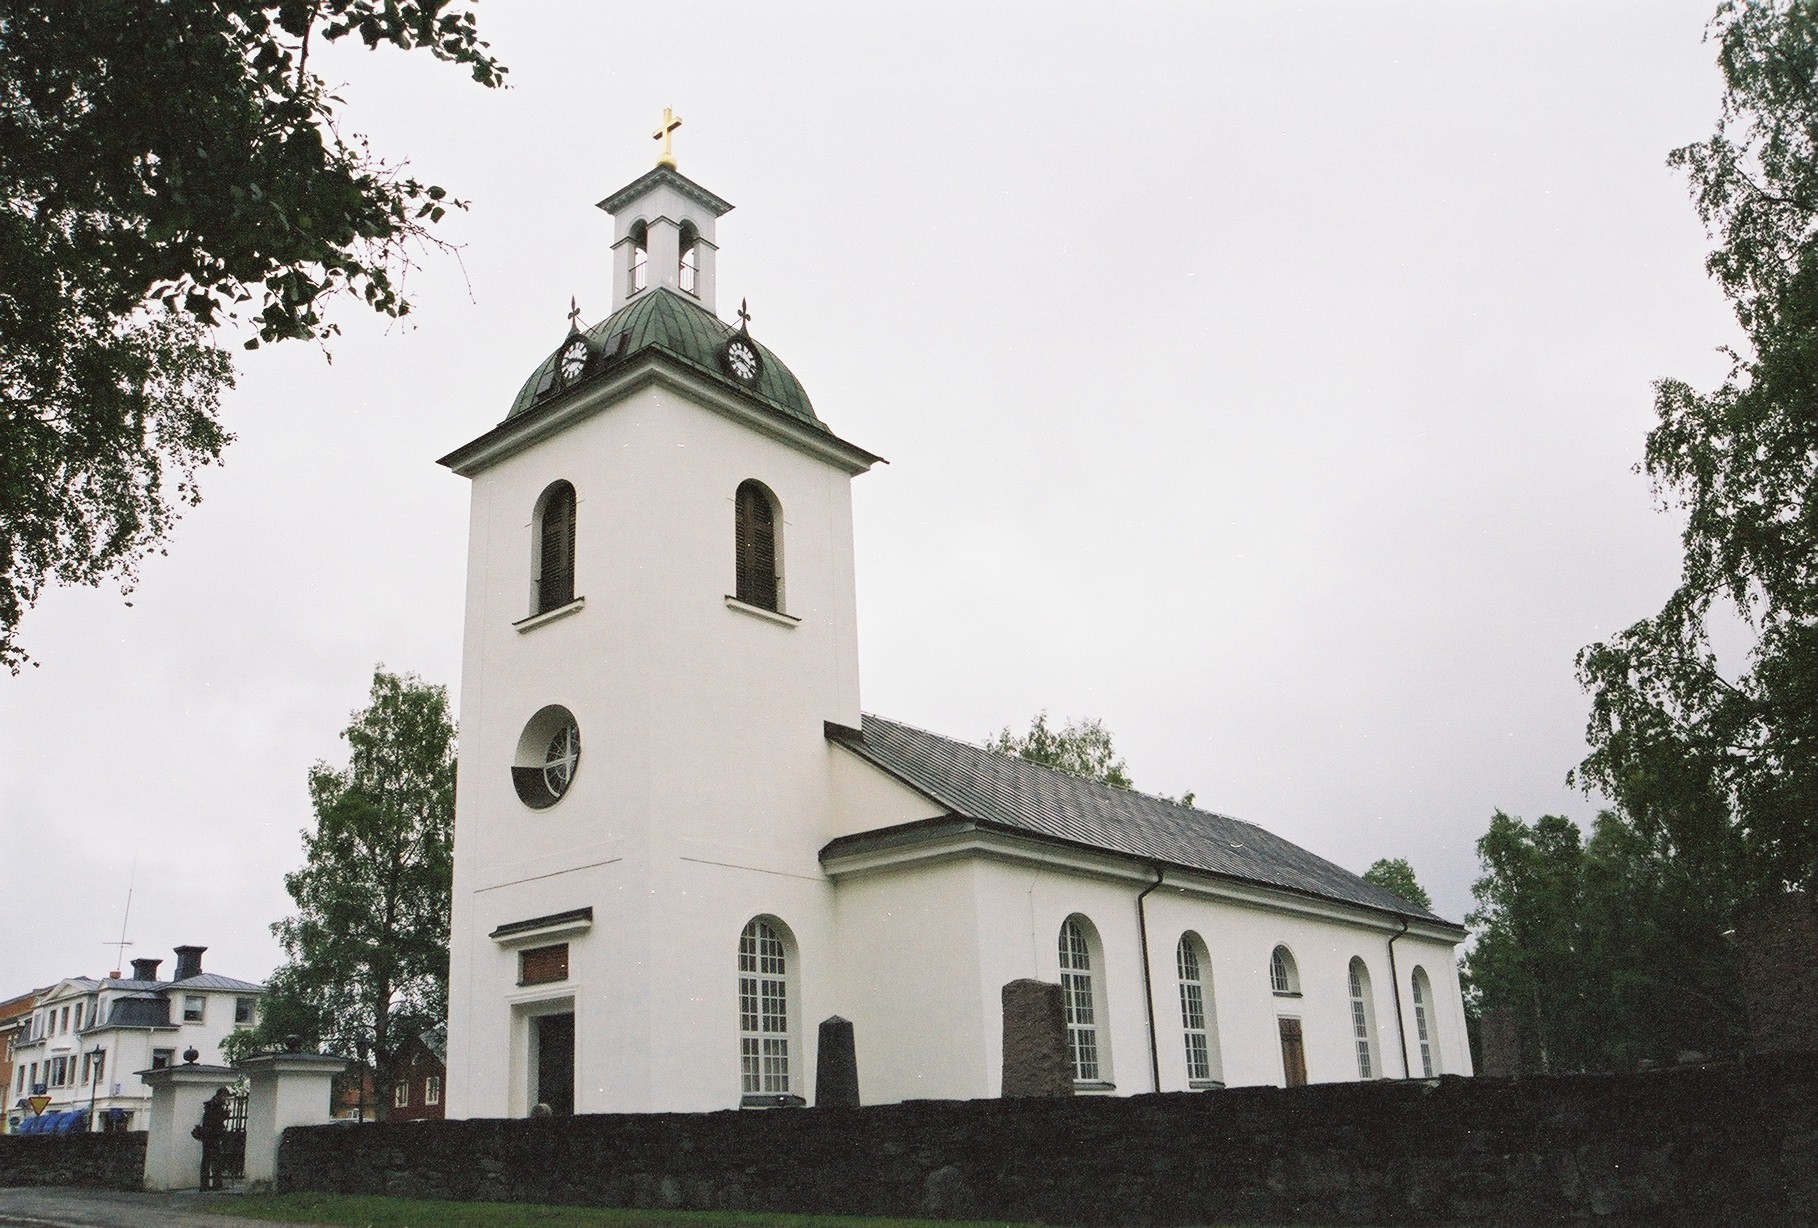 Ströms kyrka, kyrkomiljö, Kyrkan ligger idag inne i Strömsunds tätort.

Bilderna är tagna av Martin Lagergren & Emelie Petersson, bebyggelseantikvarier vid Jämtlands läns museum, i samband med inventeringen, 2004-2005.